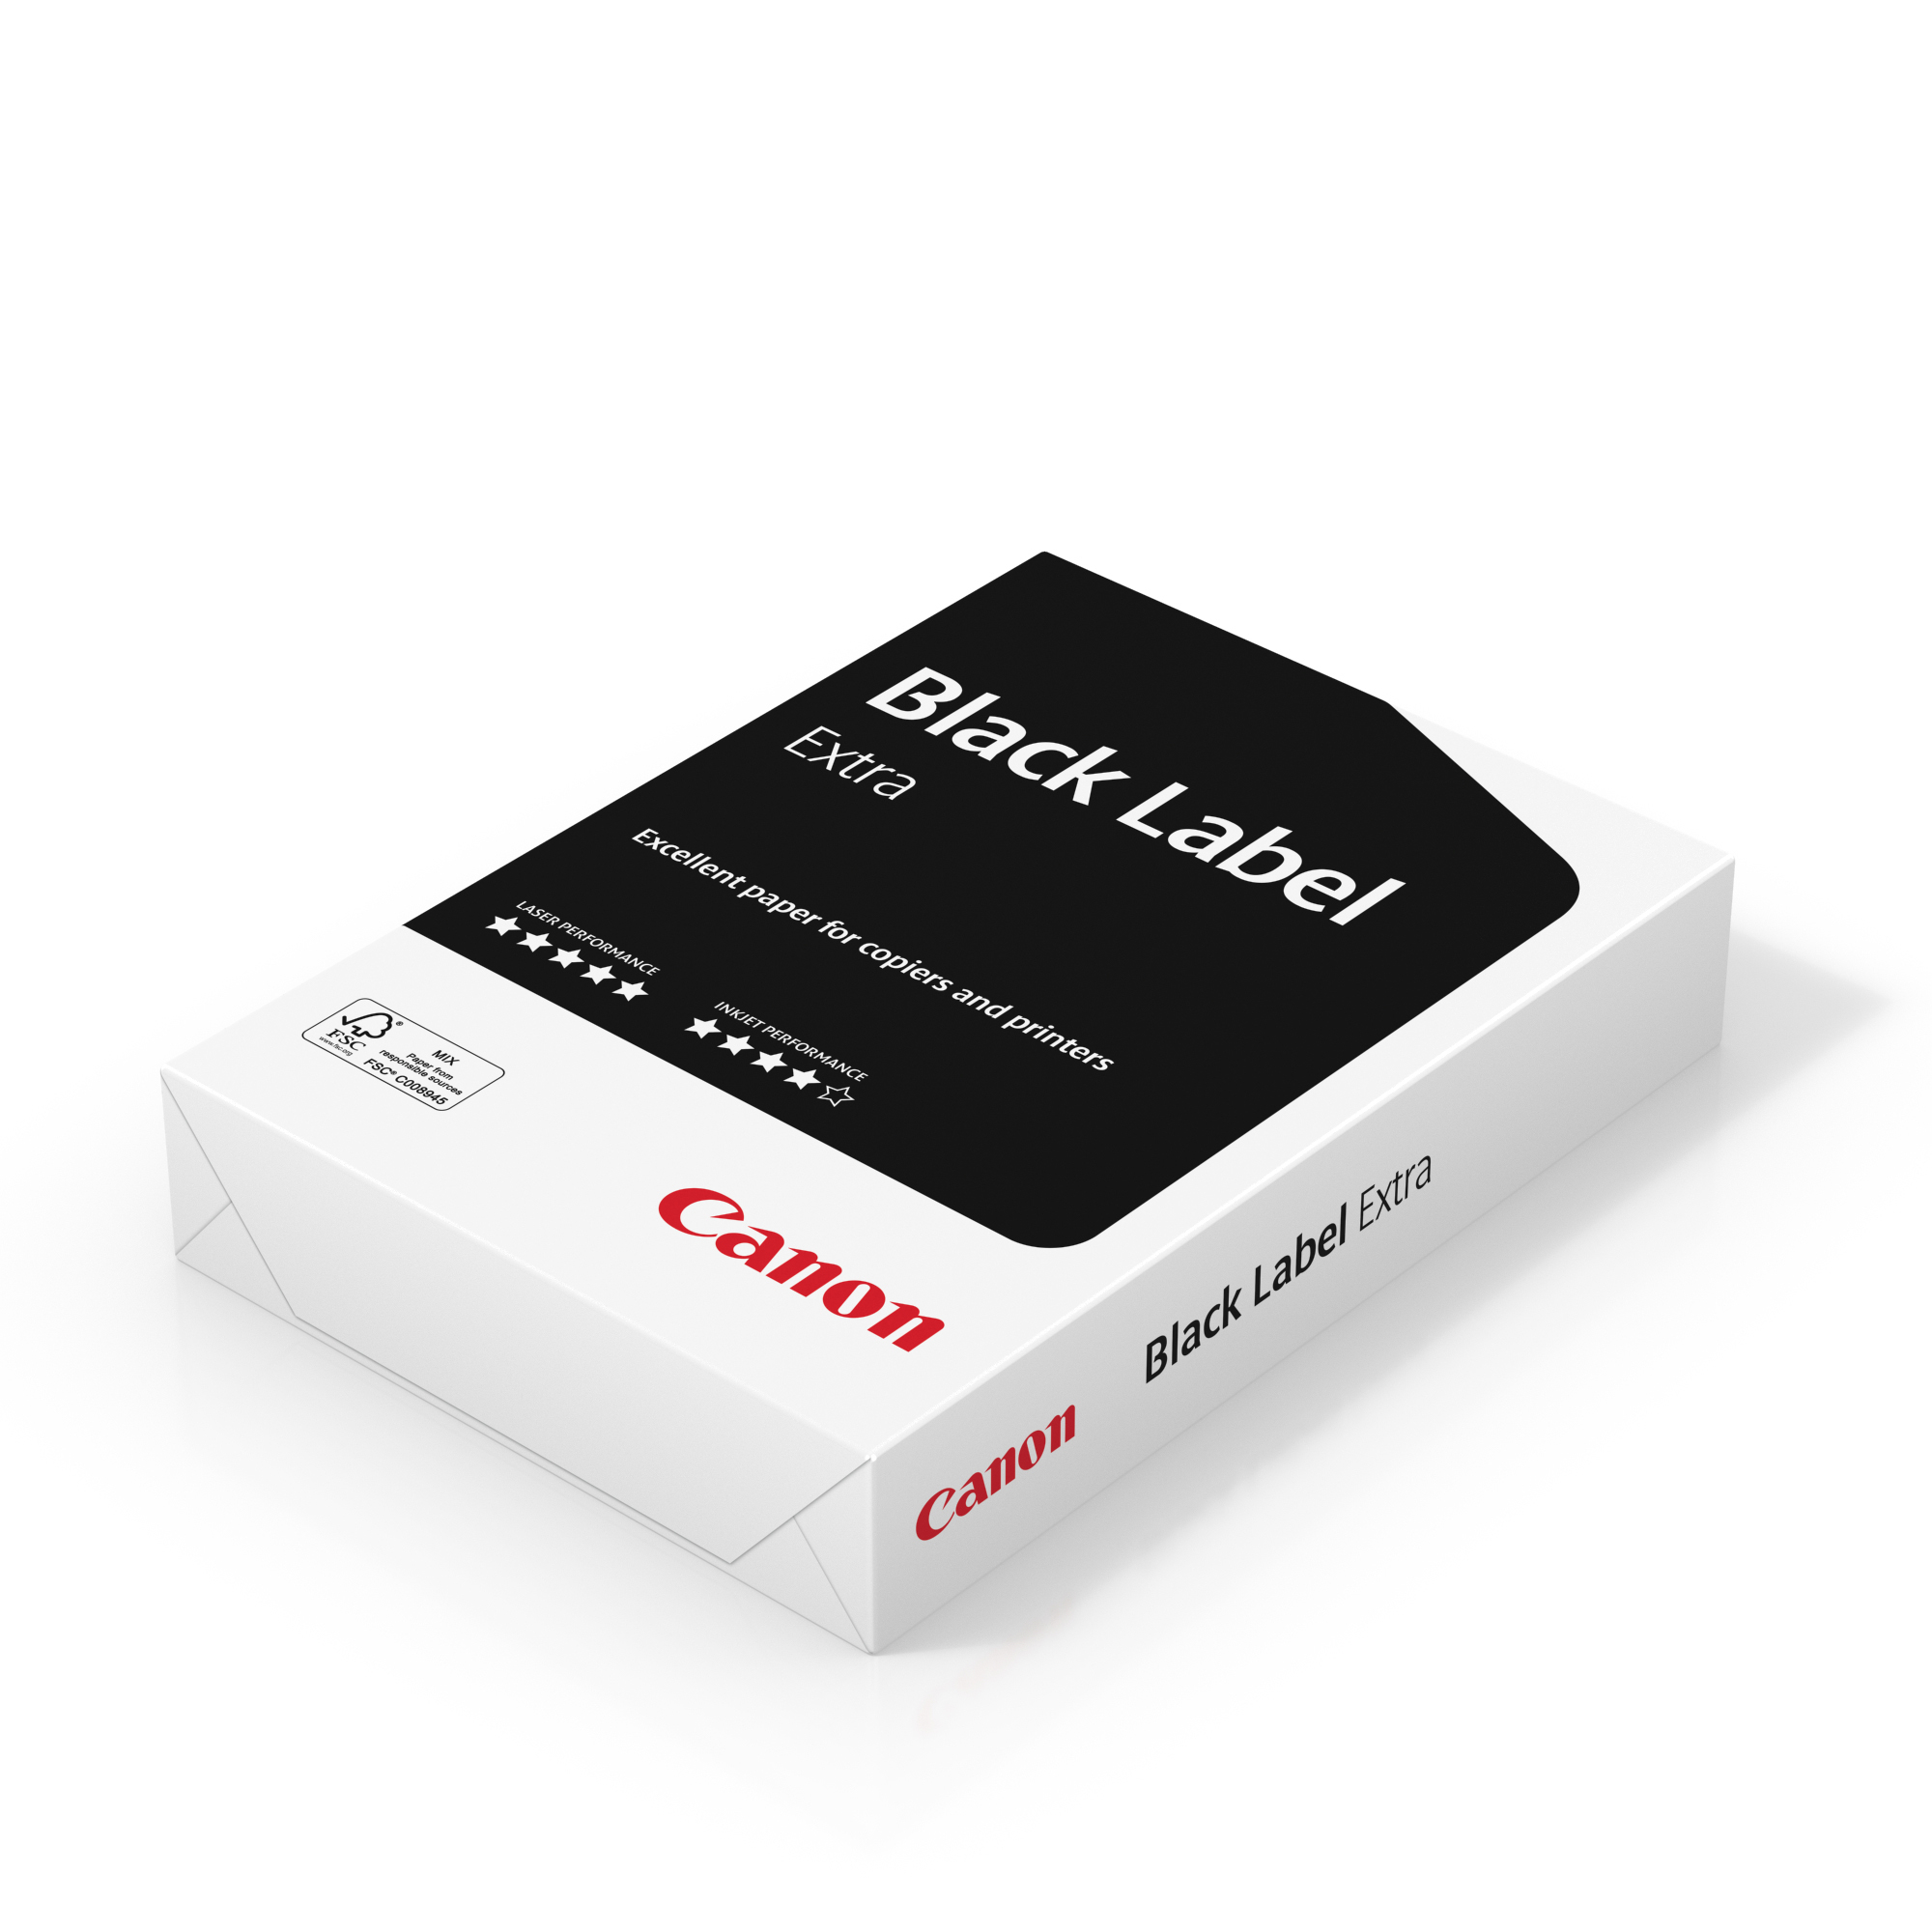 CANON Black Label Premium Paper A3 6251B009 FSC, 80g 500 feuilles